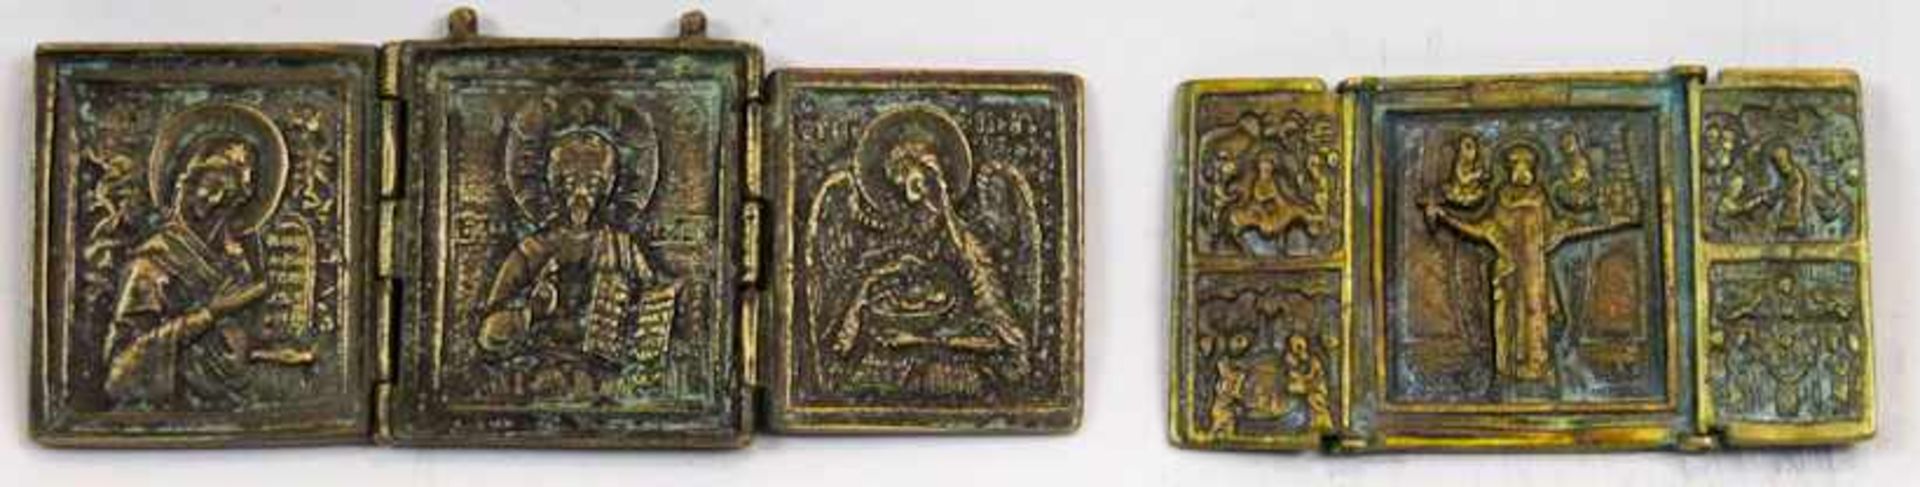 Zwei kl. Reise-Triptychen. Bronze. a) Deesis. L. ges. 17,5 cm. b) Nikolaus von Moshajsk. Auf den